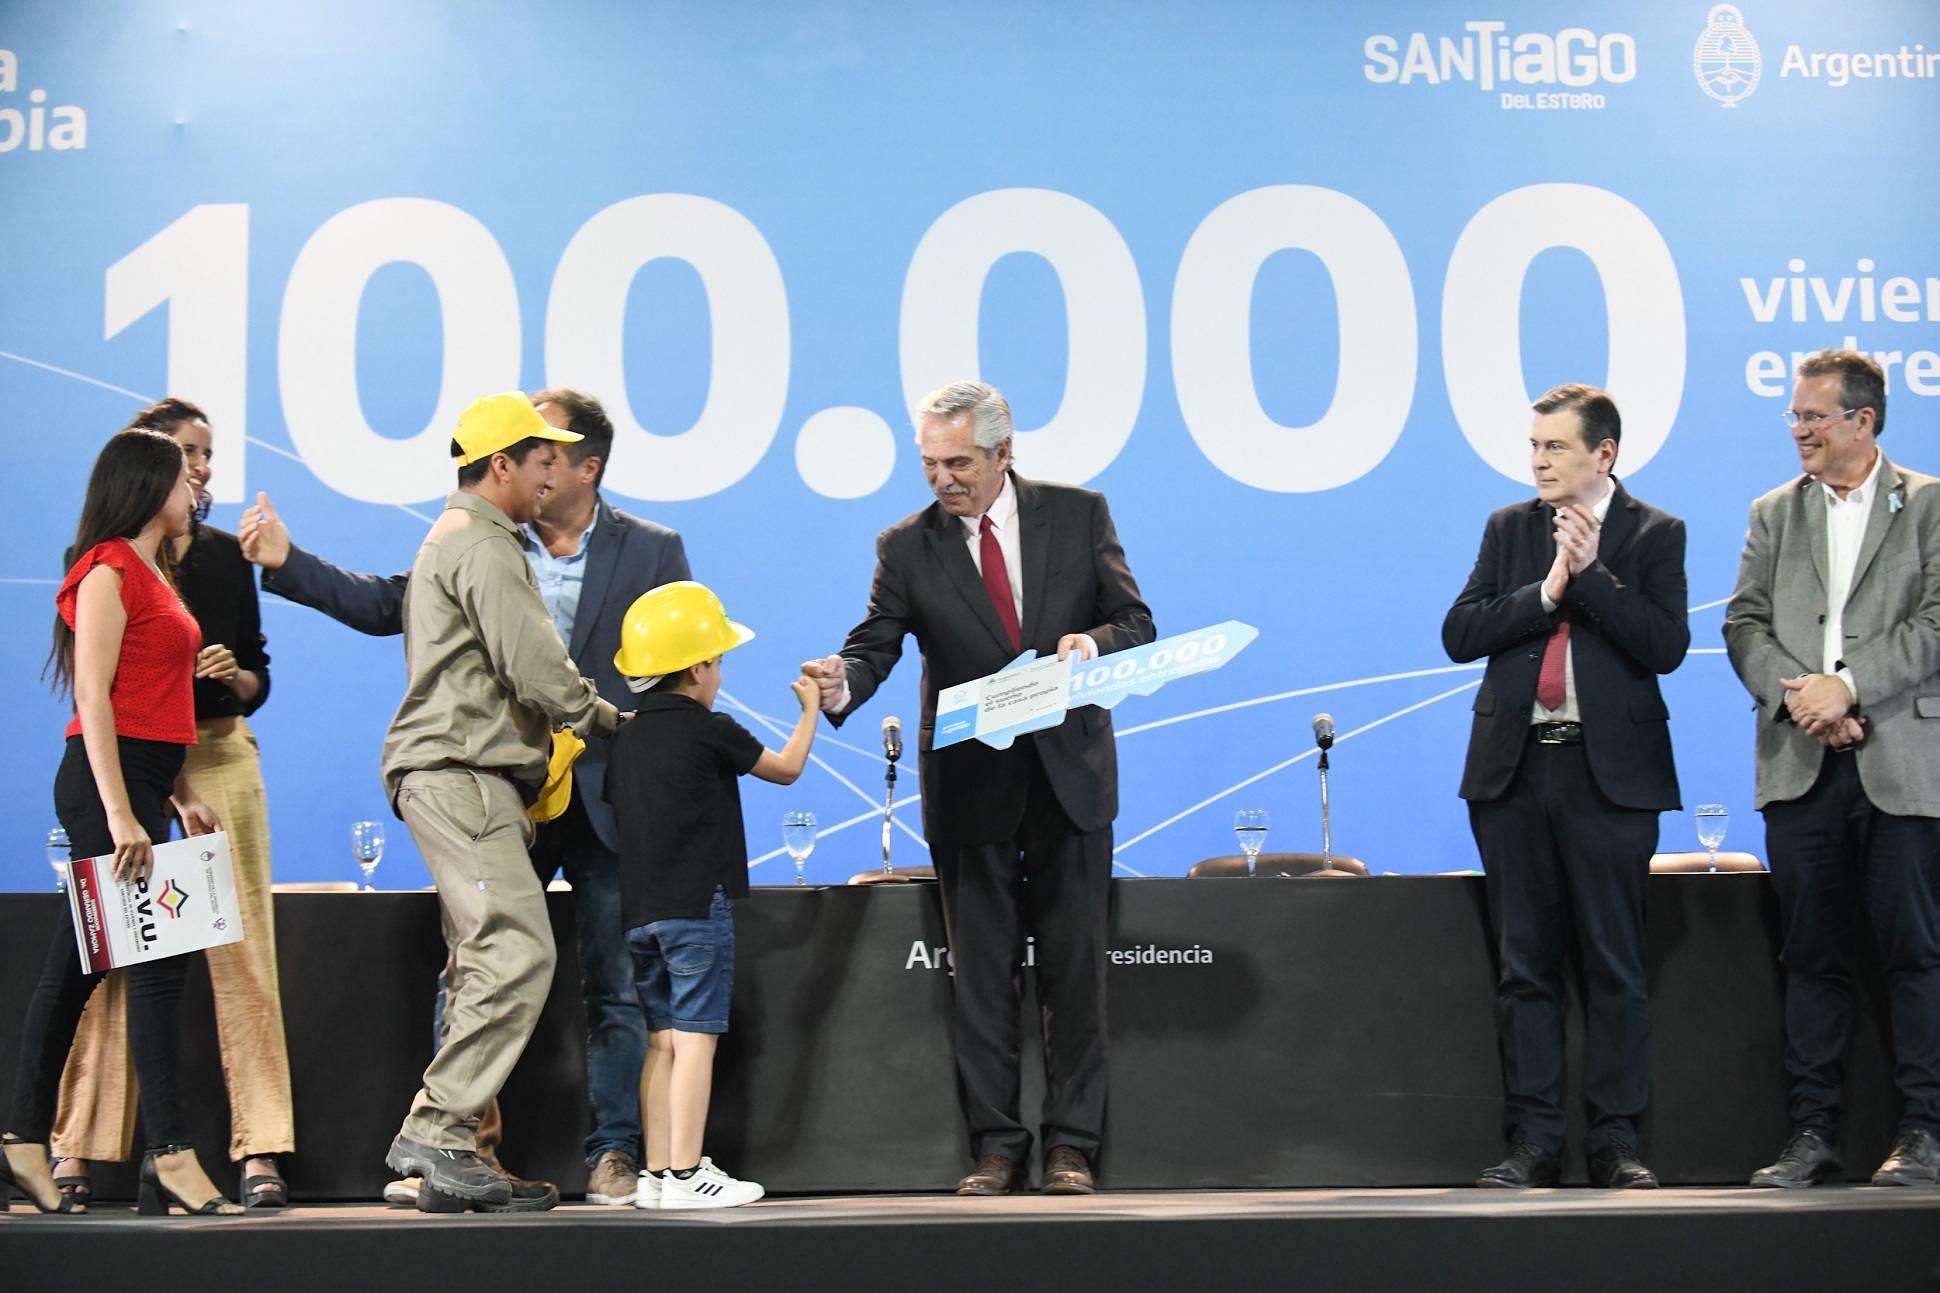  El presidente entregó en Santiago del Estero la vivienda 100 mil de la gestión